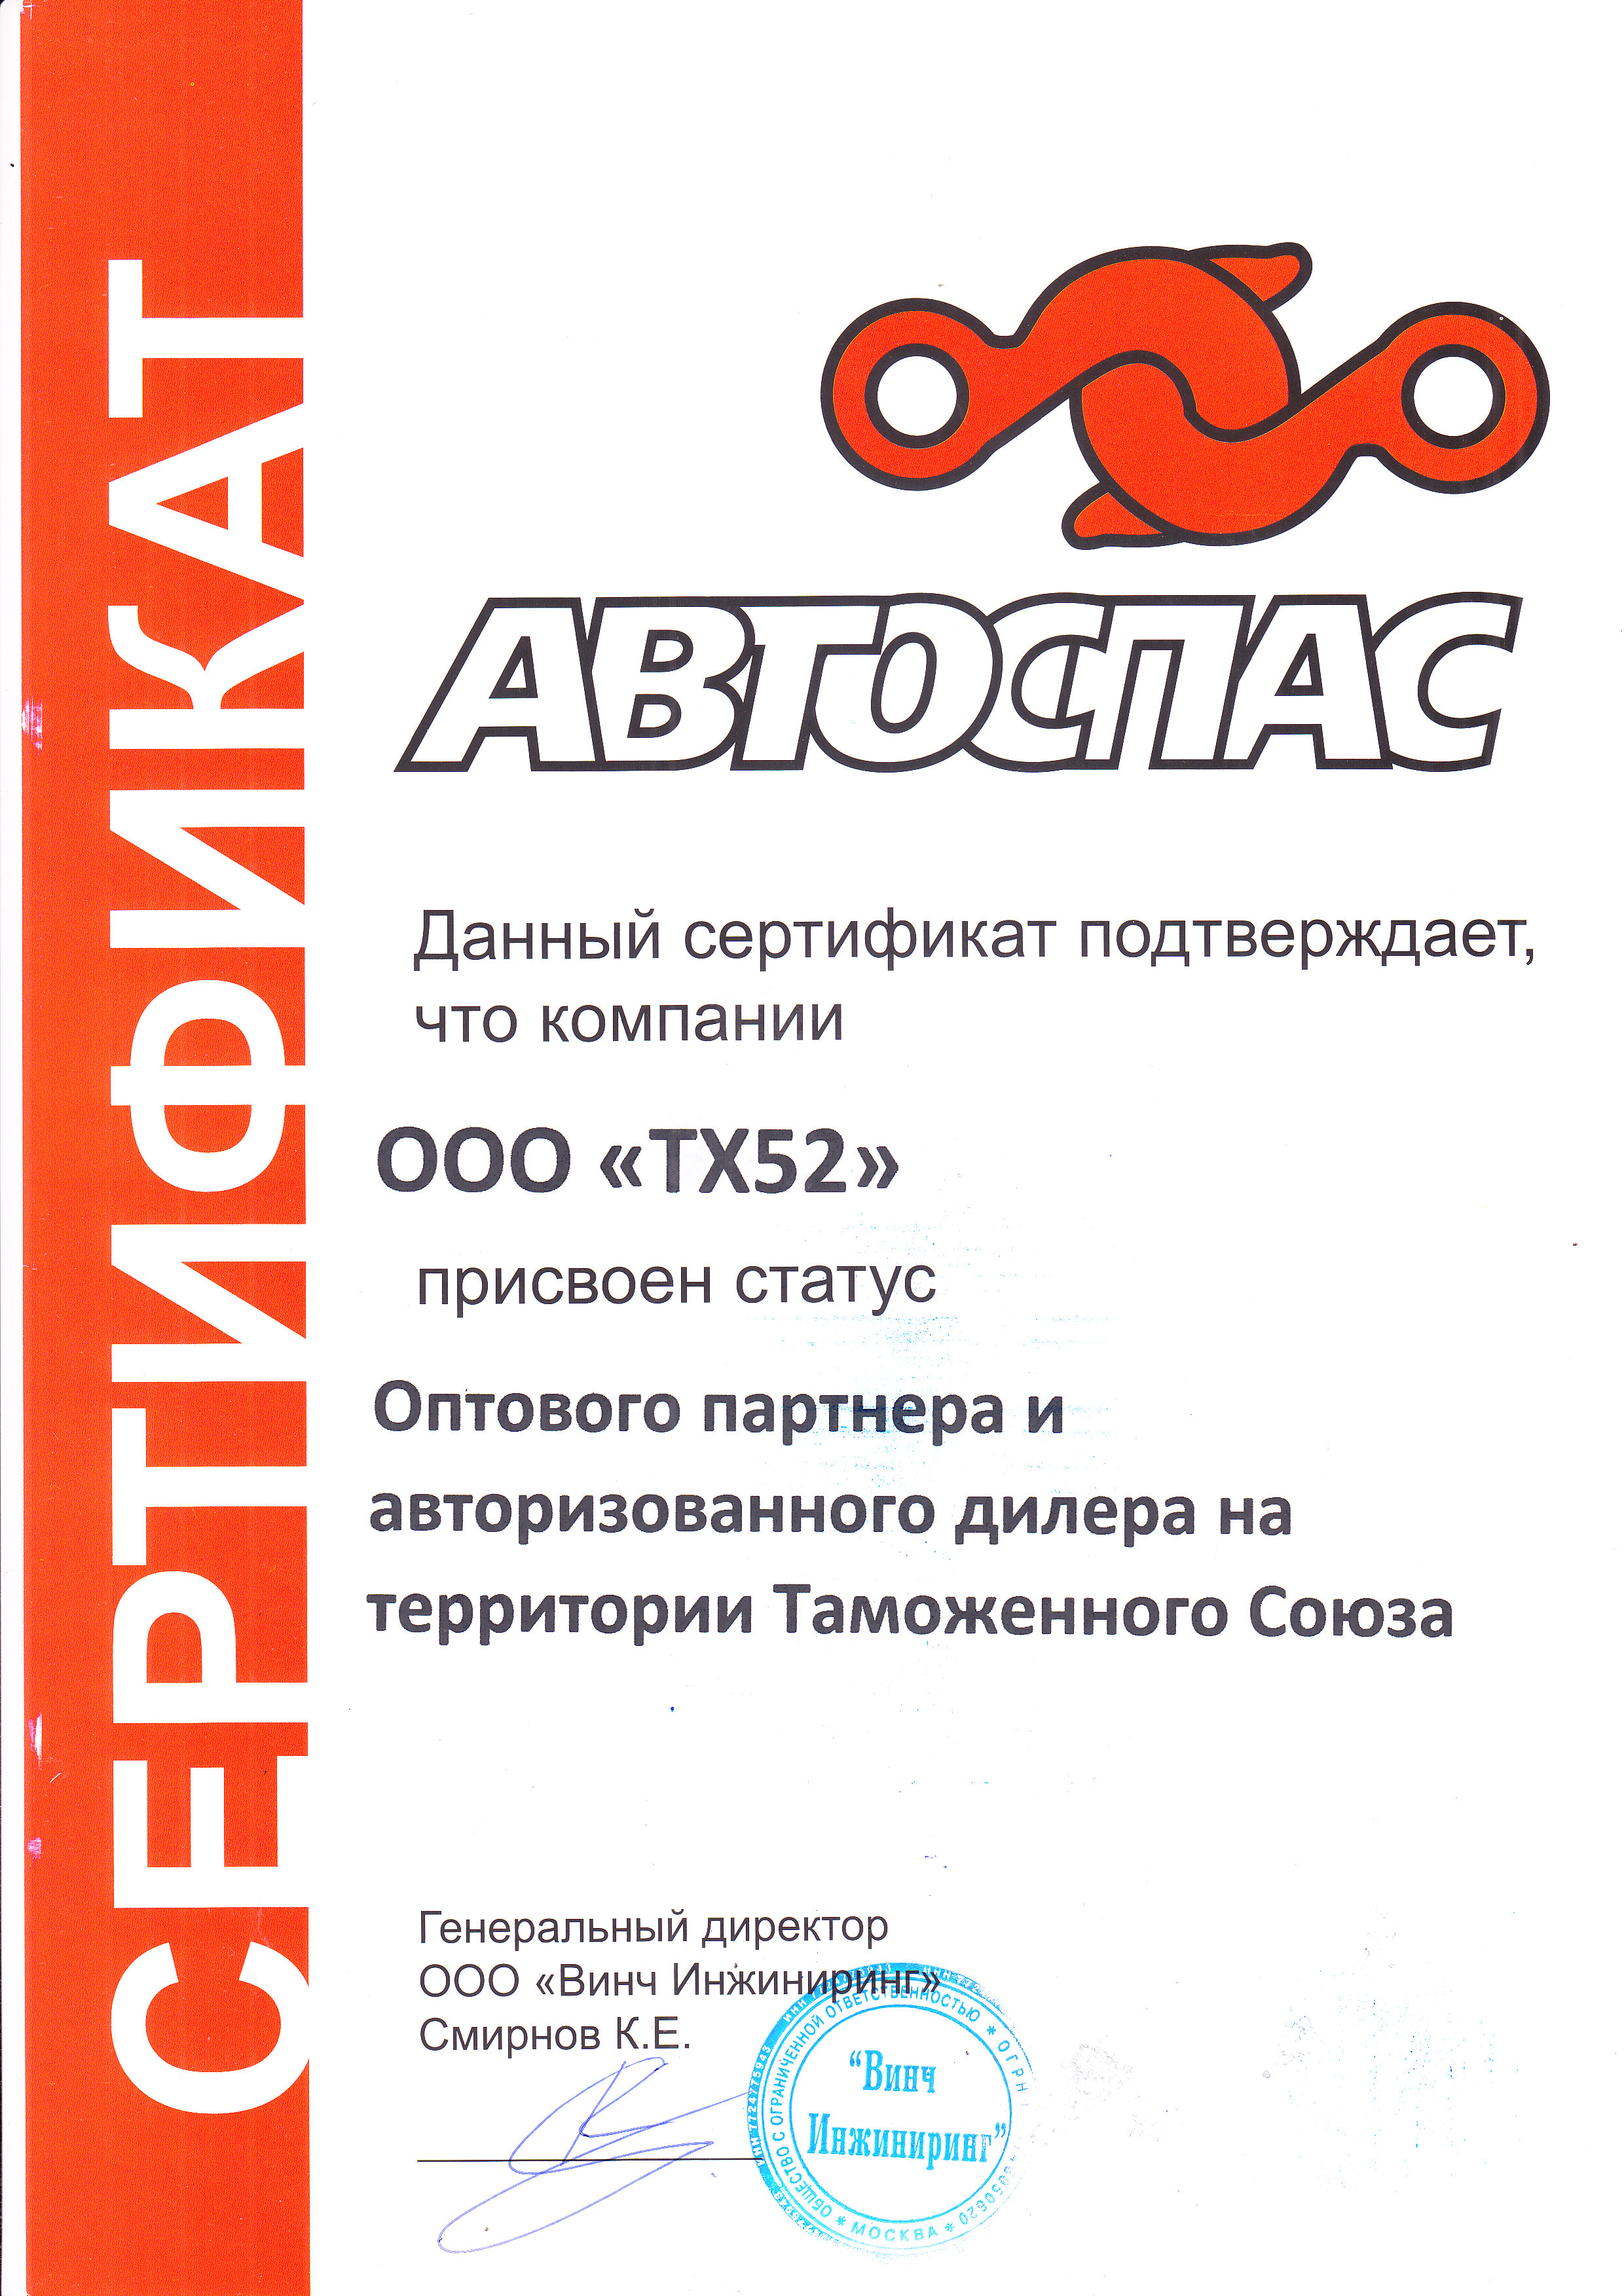 сертификат авторизованного дилера бренда "Автоспас"